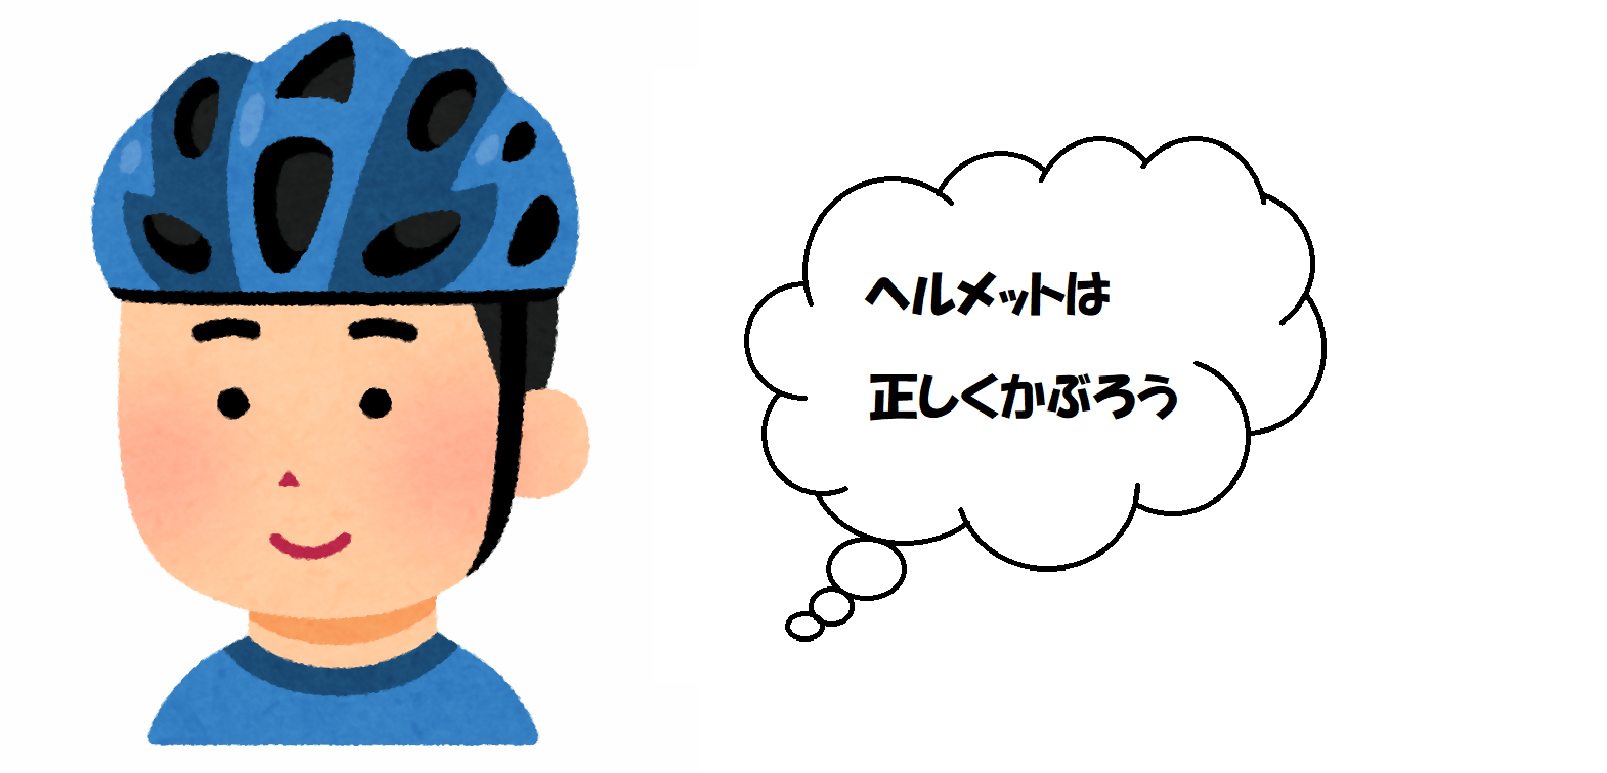 自転車用ヘルメットをかぶり、正しいヘルメットの着用を呼びかける画像